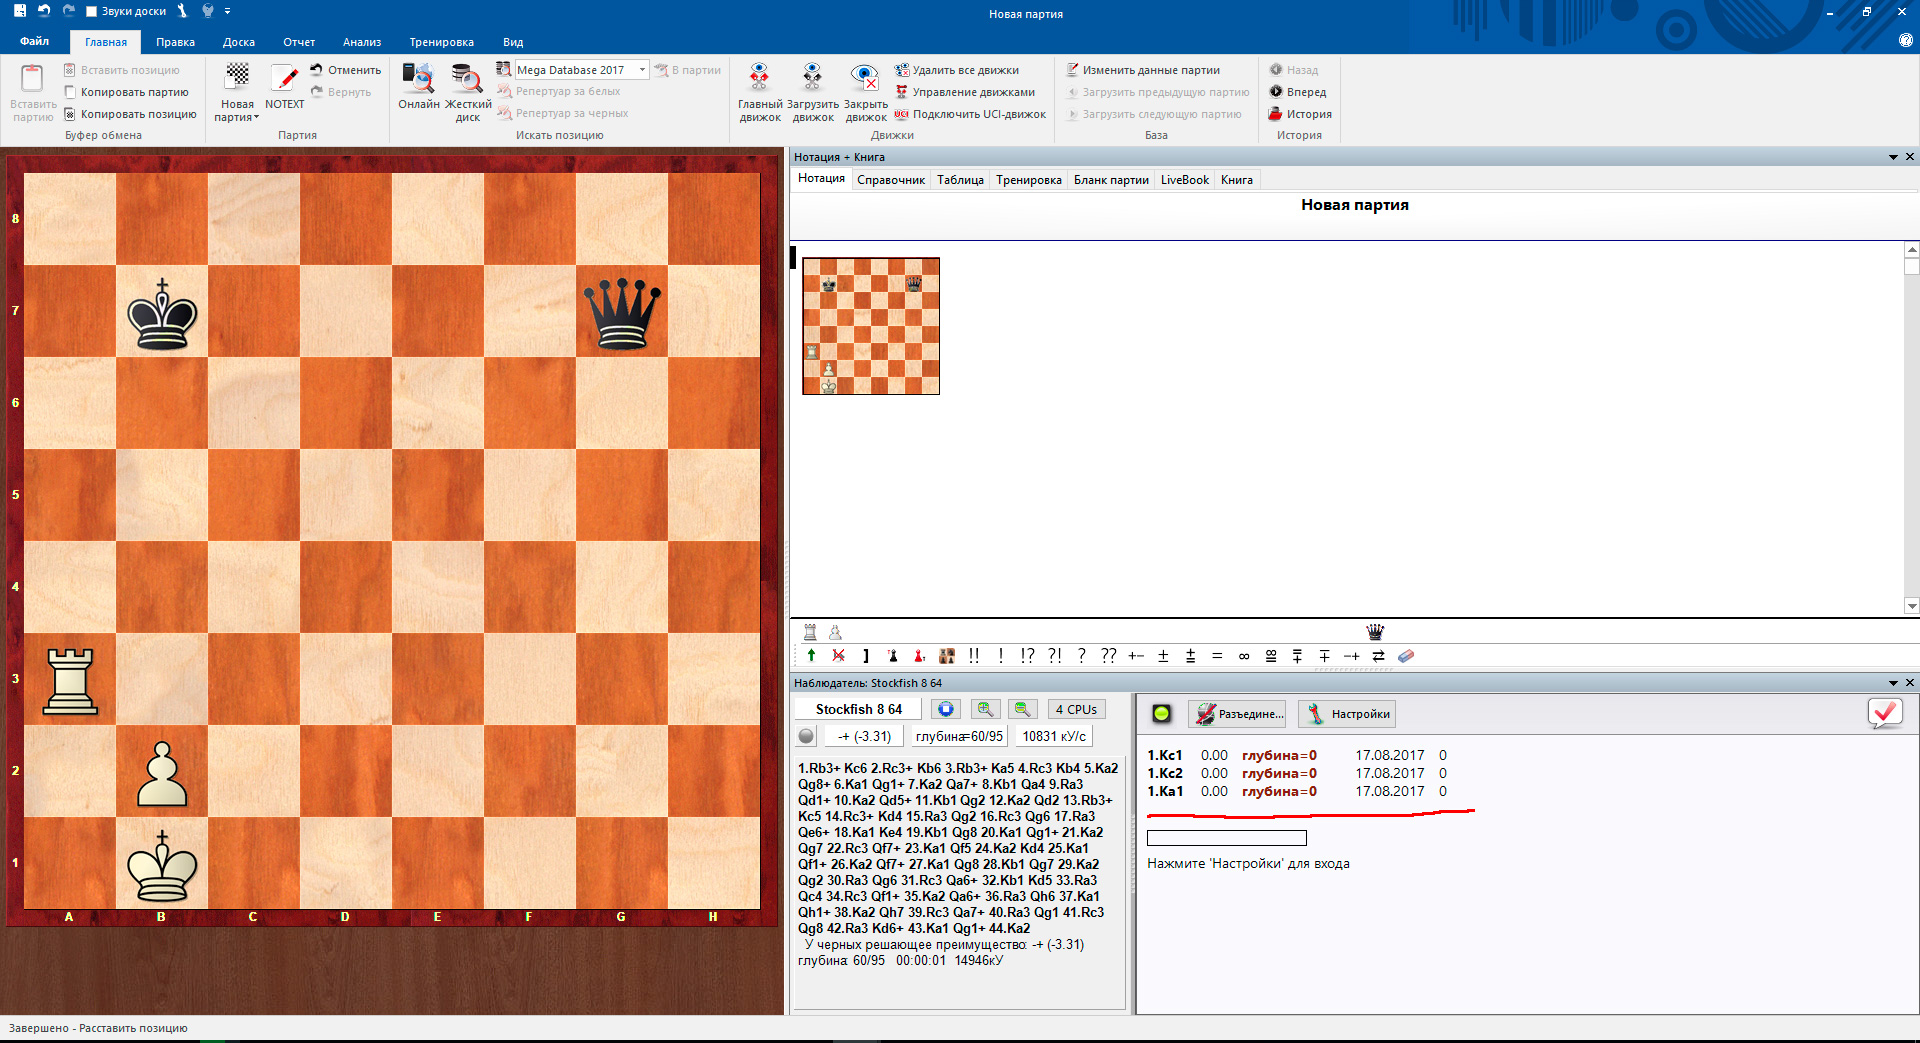 Онлайн поддержка Таблиц Налимова в Chessbase